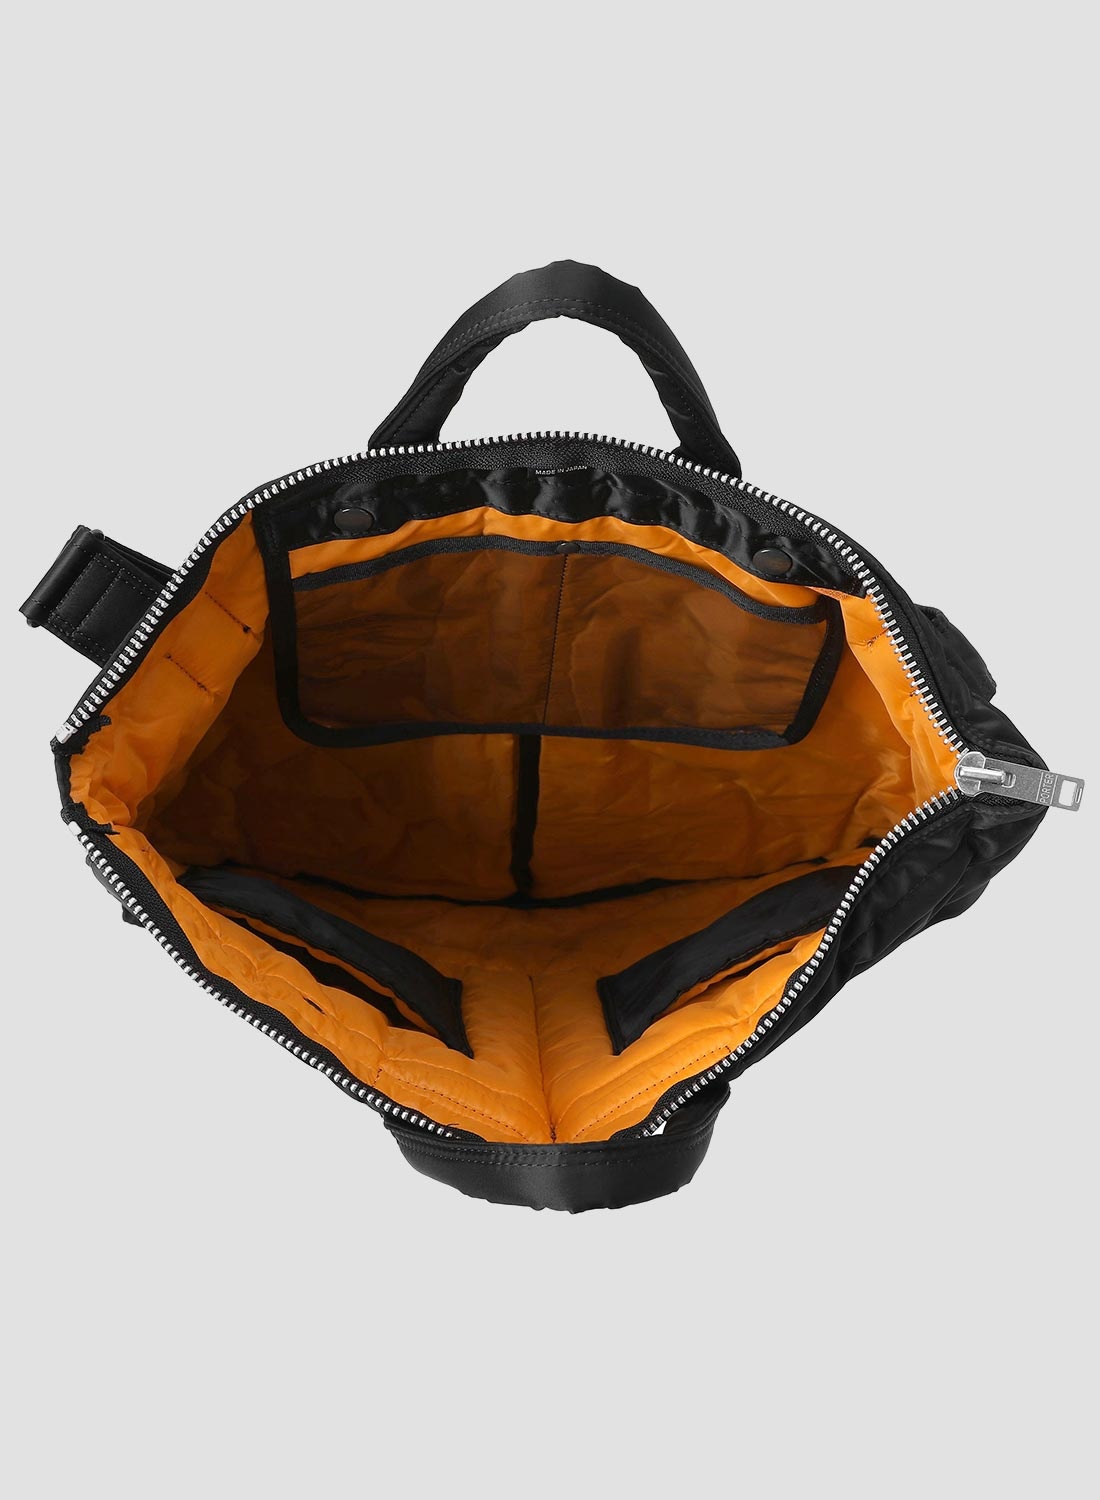 Porter-Yoshida & Co Tanker 2-Way Helmet Bag in Black - 2